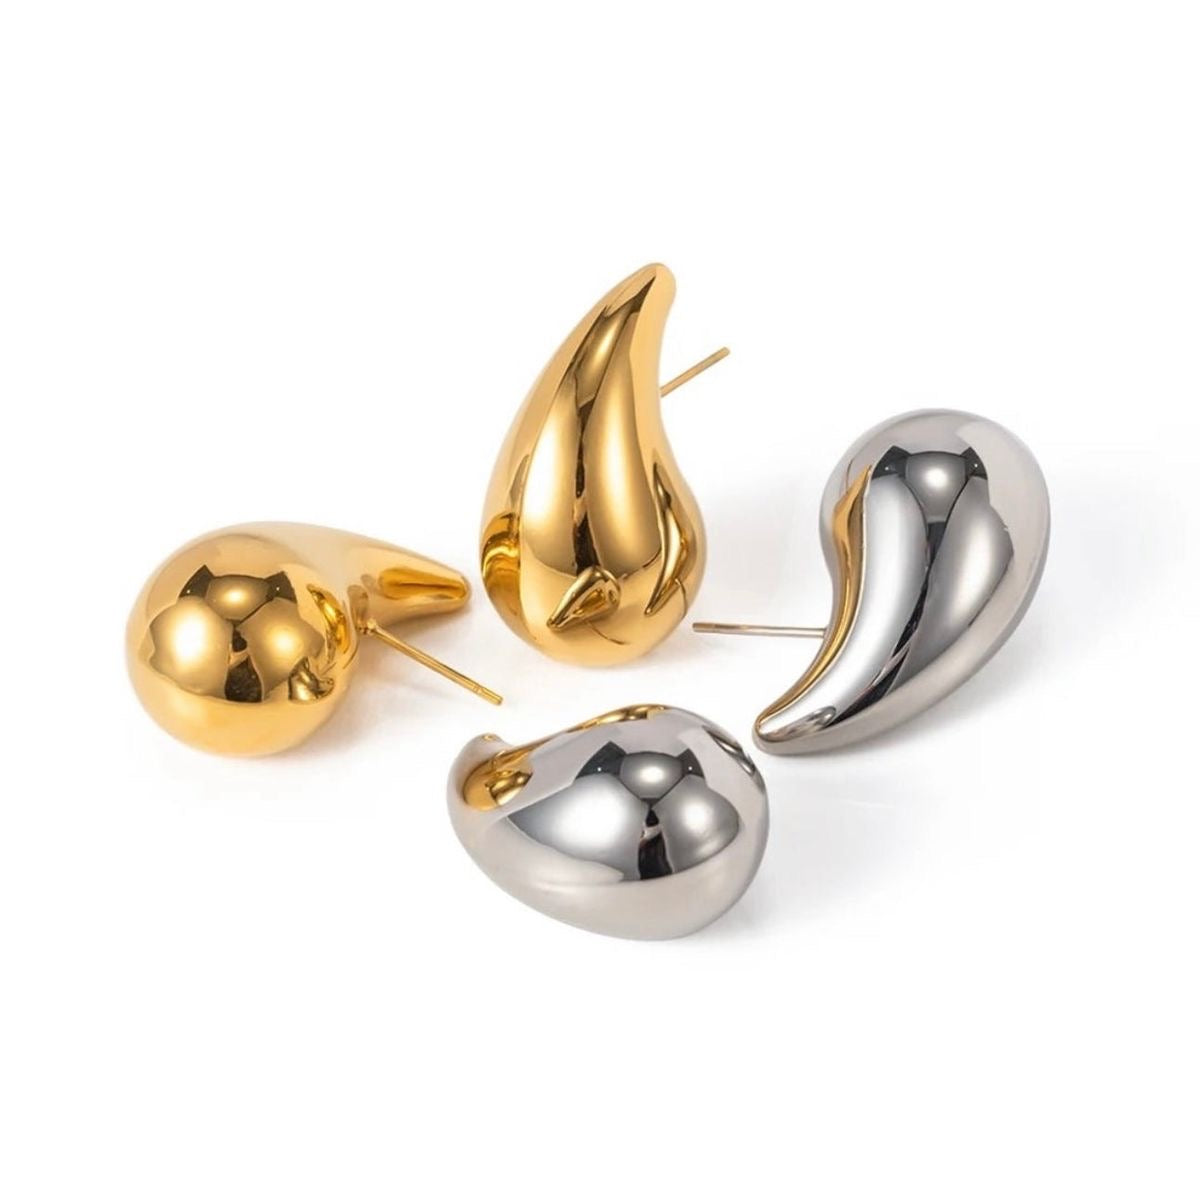 Σκουλαρίκια σταγόνες από ατσάλι επιχρυσωμένα με 24Κ χρυσό 